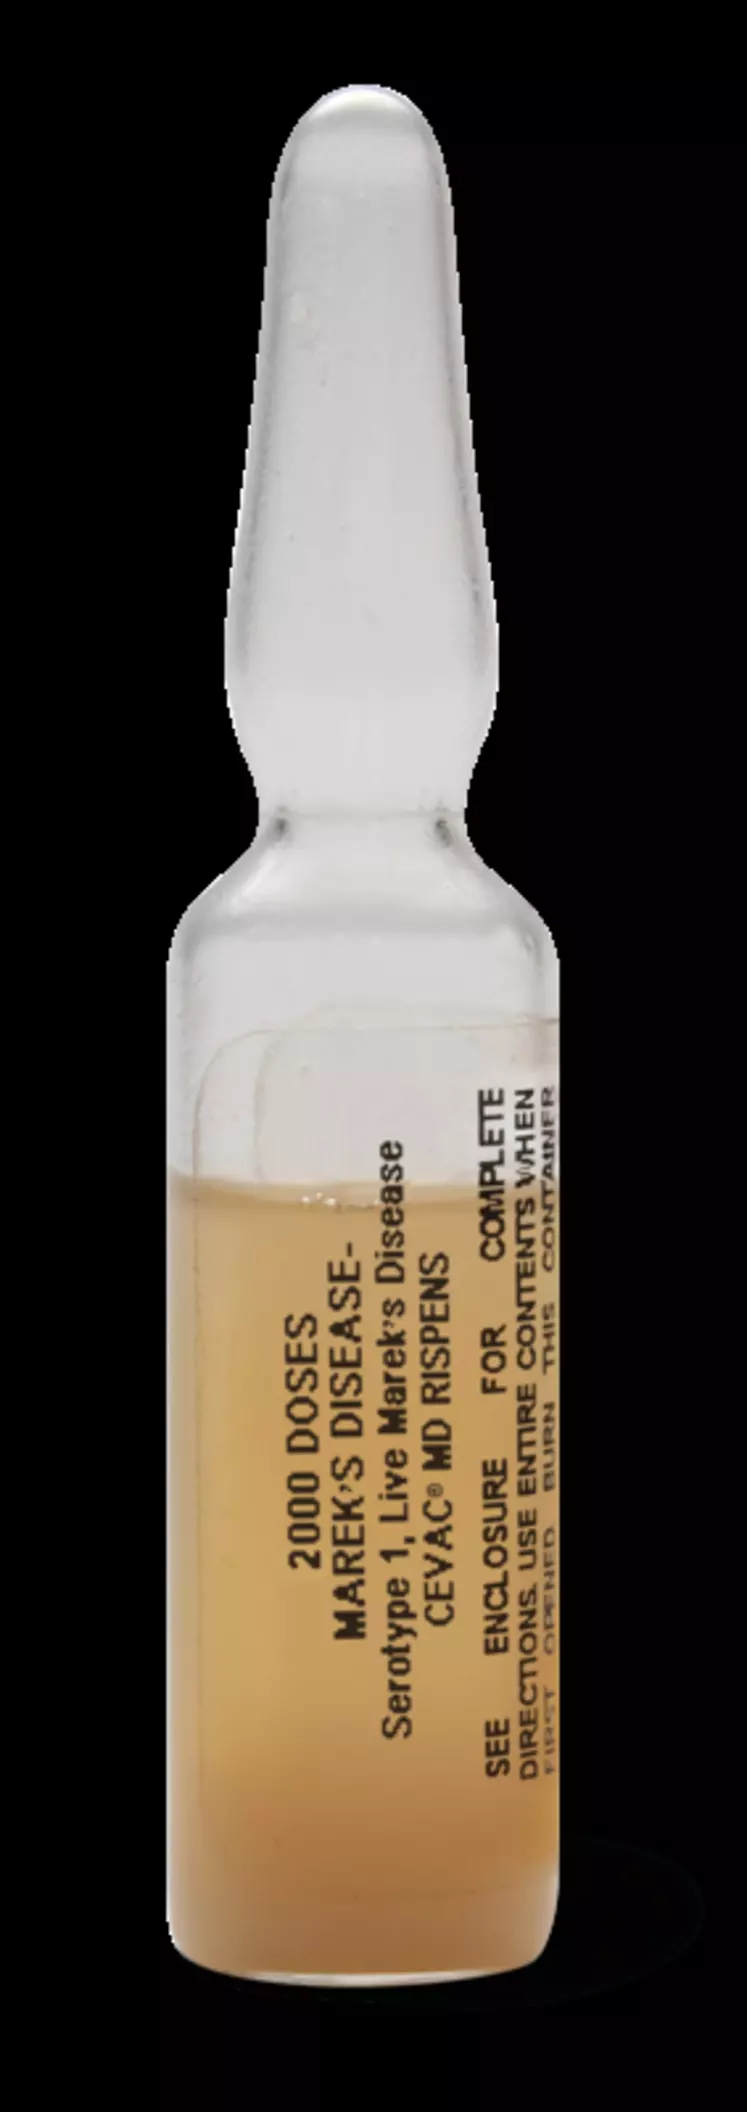 Cevac MD Rispens est commercialisé sous forme d'ampoules de 2000 doses conservées dans l'azote liquide. © Ceva